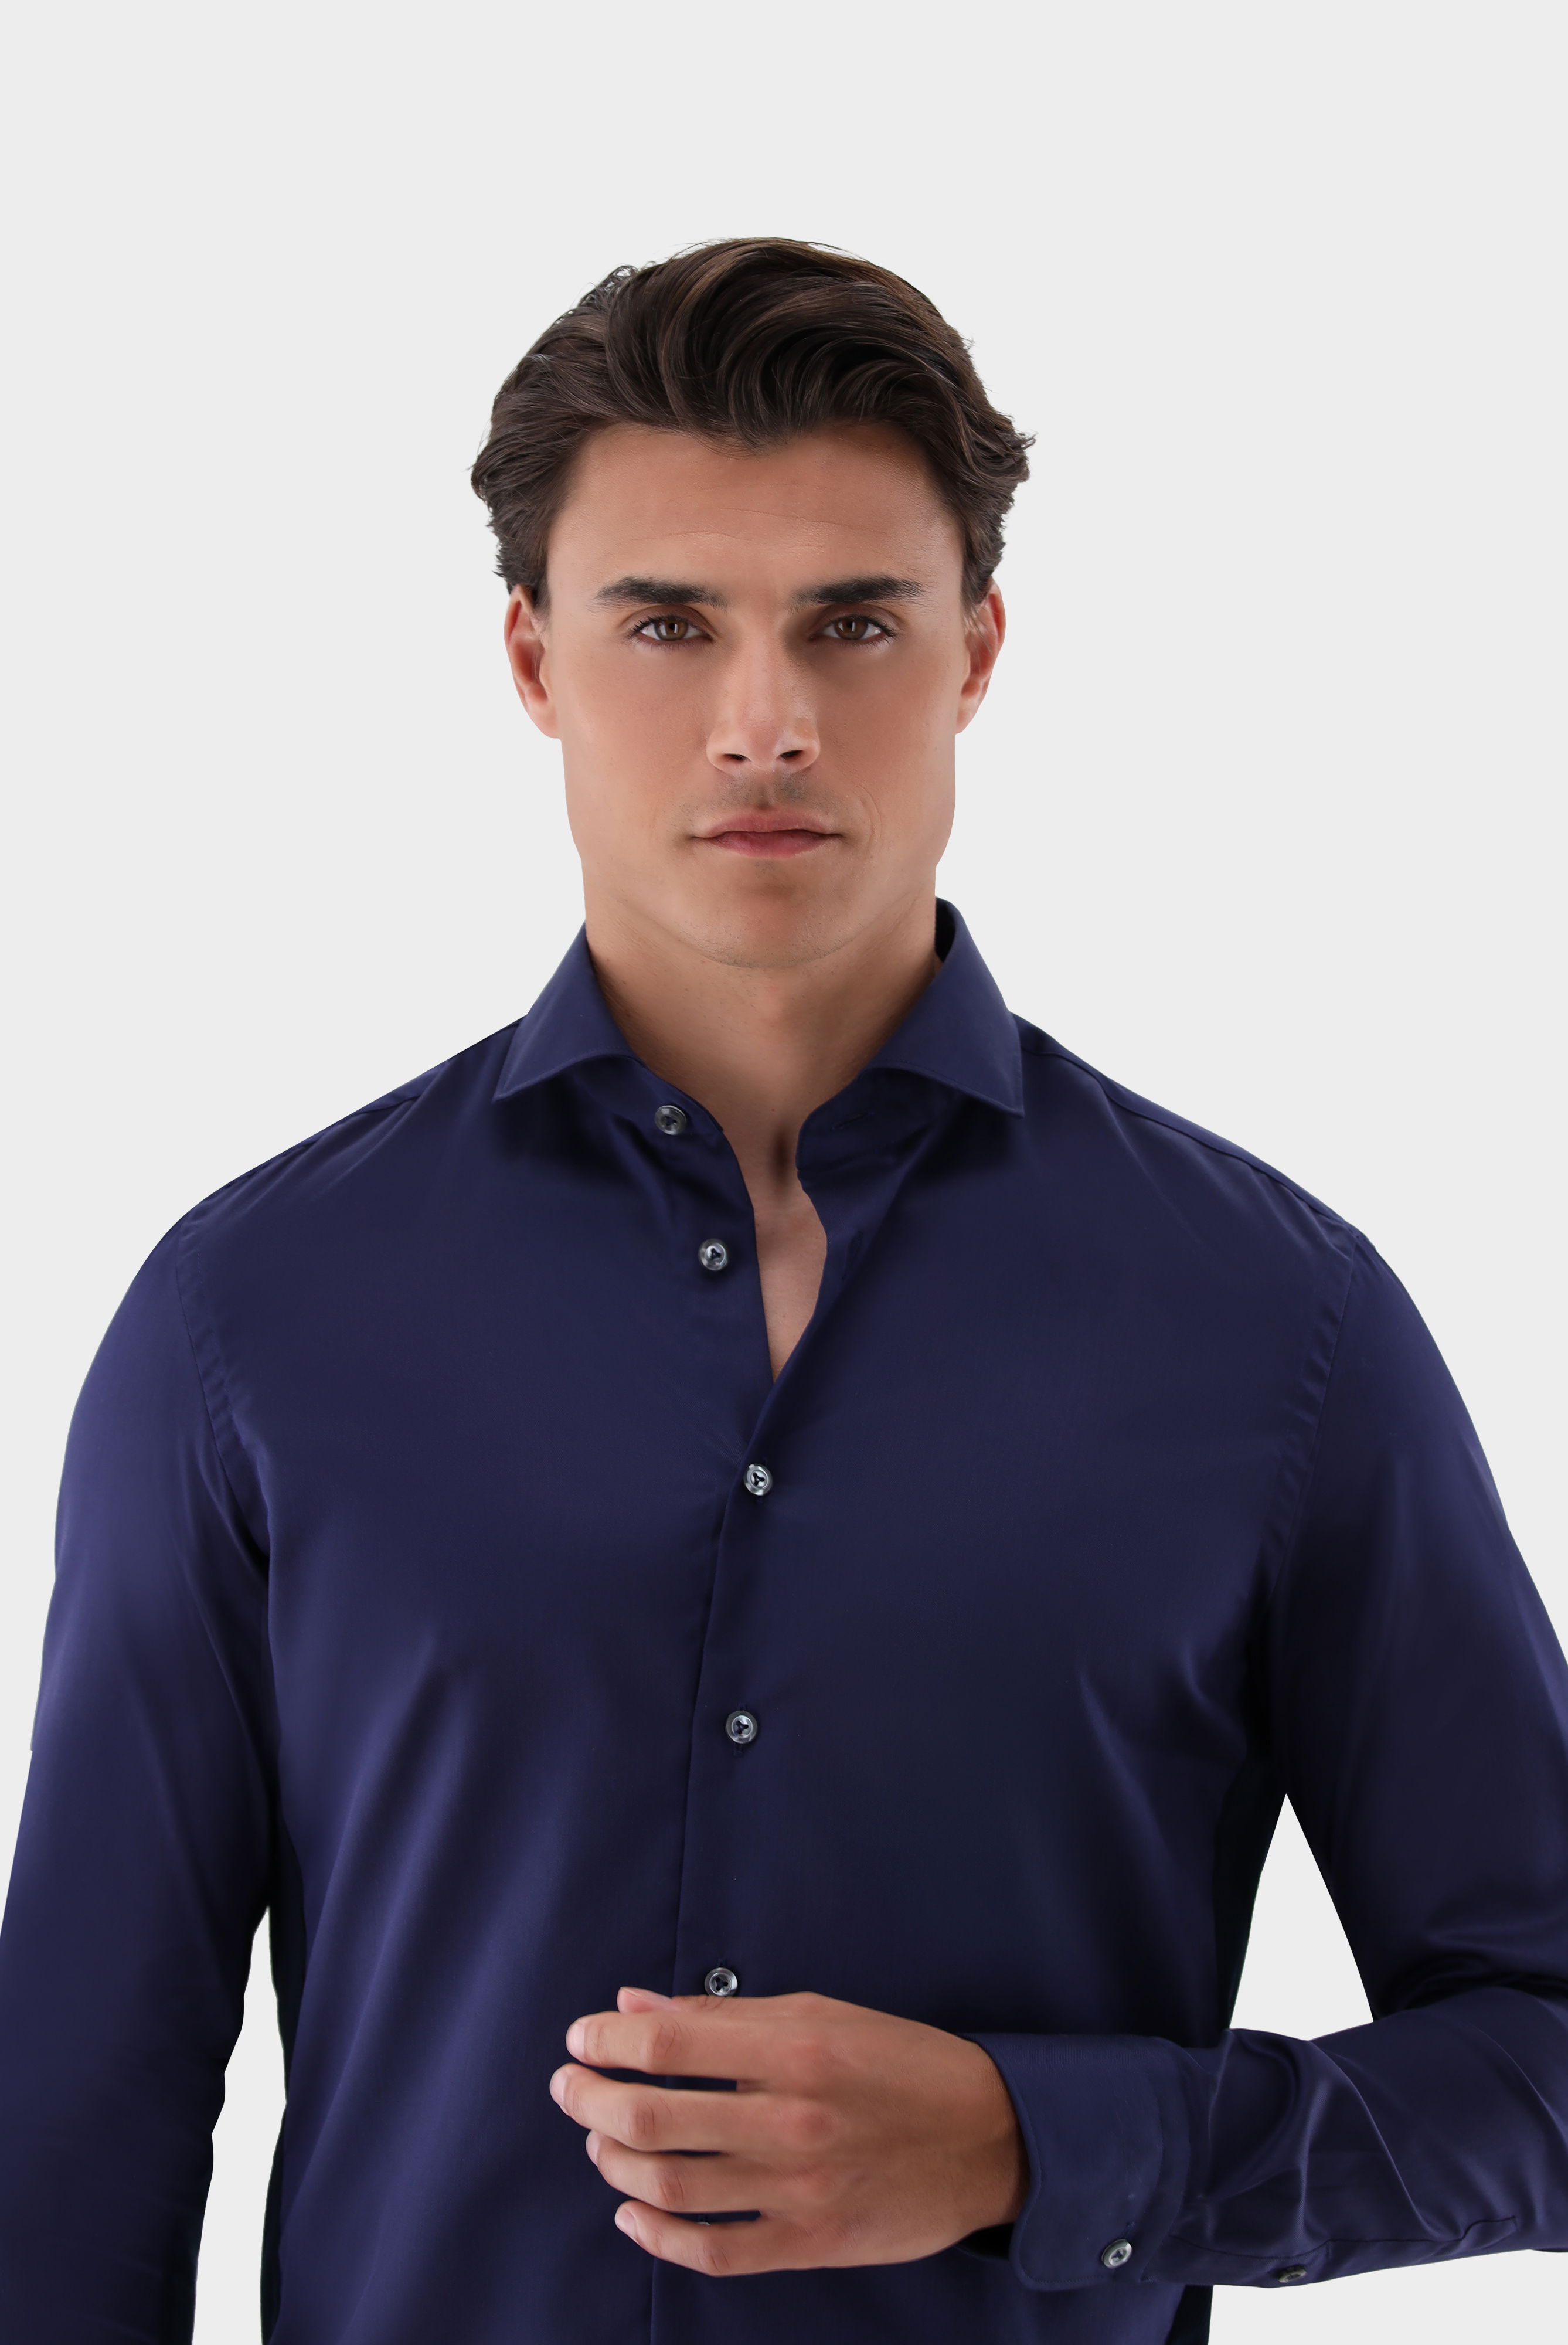 Bügelleichte Hemden+Bügelfreies Hybridshirt mit Jerseyeinsatz Slim Fit+20.2553.0F.132241.790.42